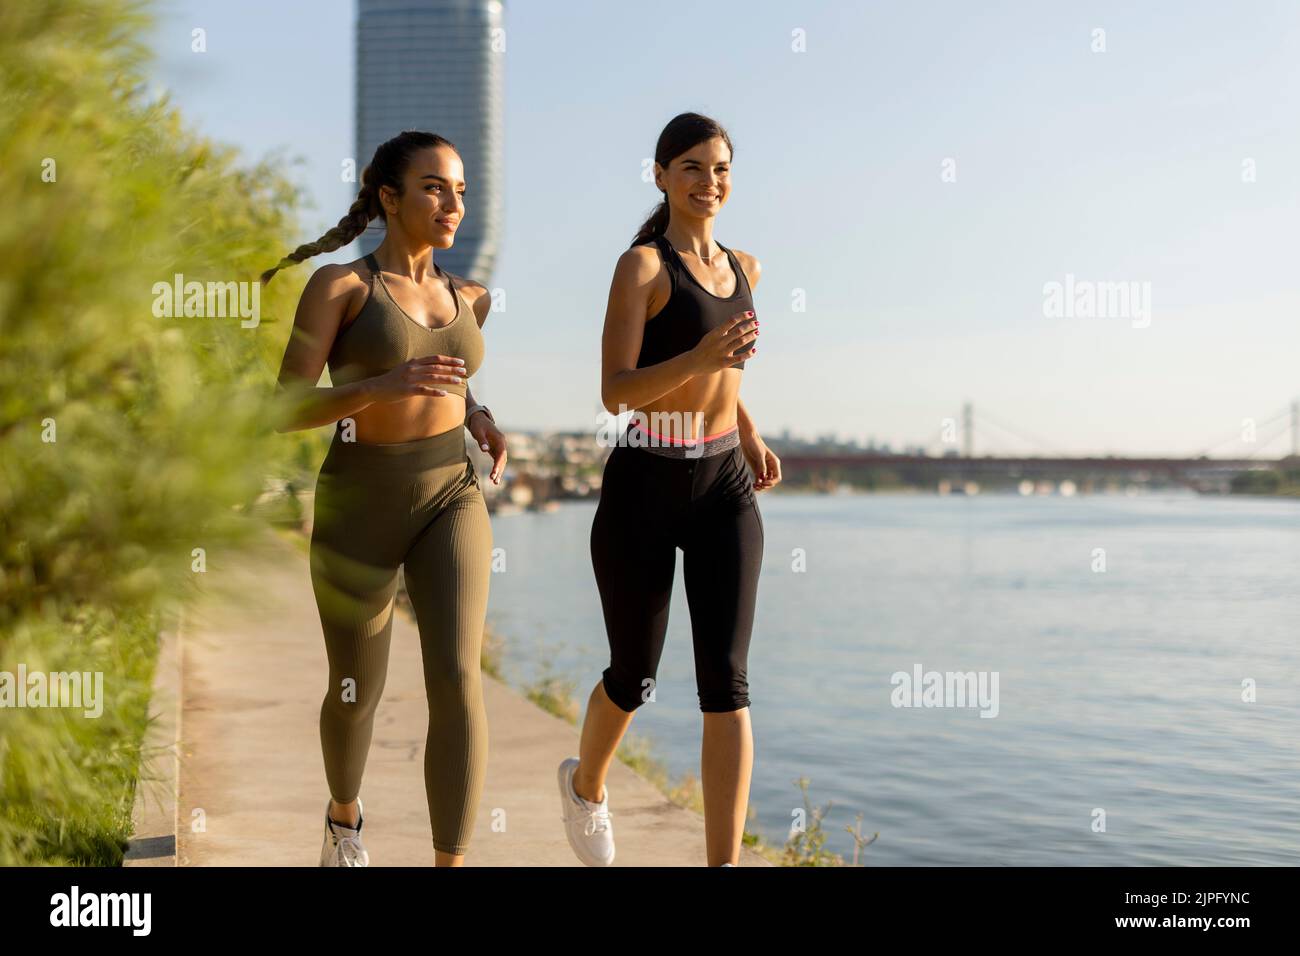 Una mujer bastante joven haciendo ejercicio junto al paseo del río Foto de stock